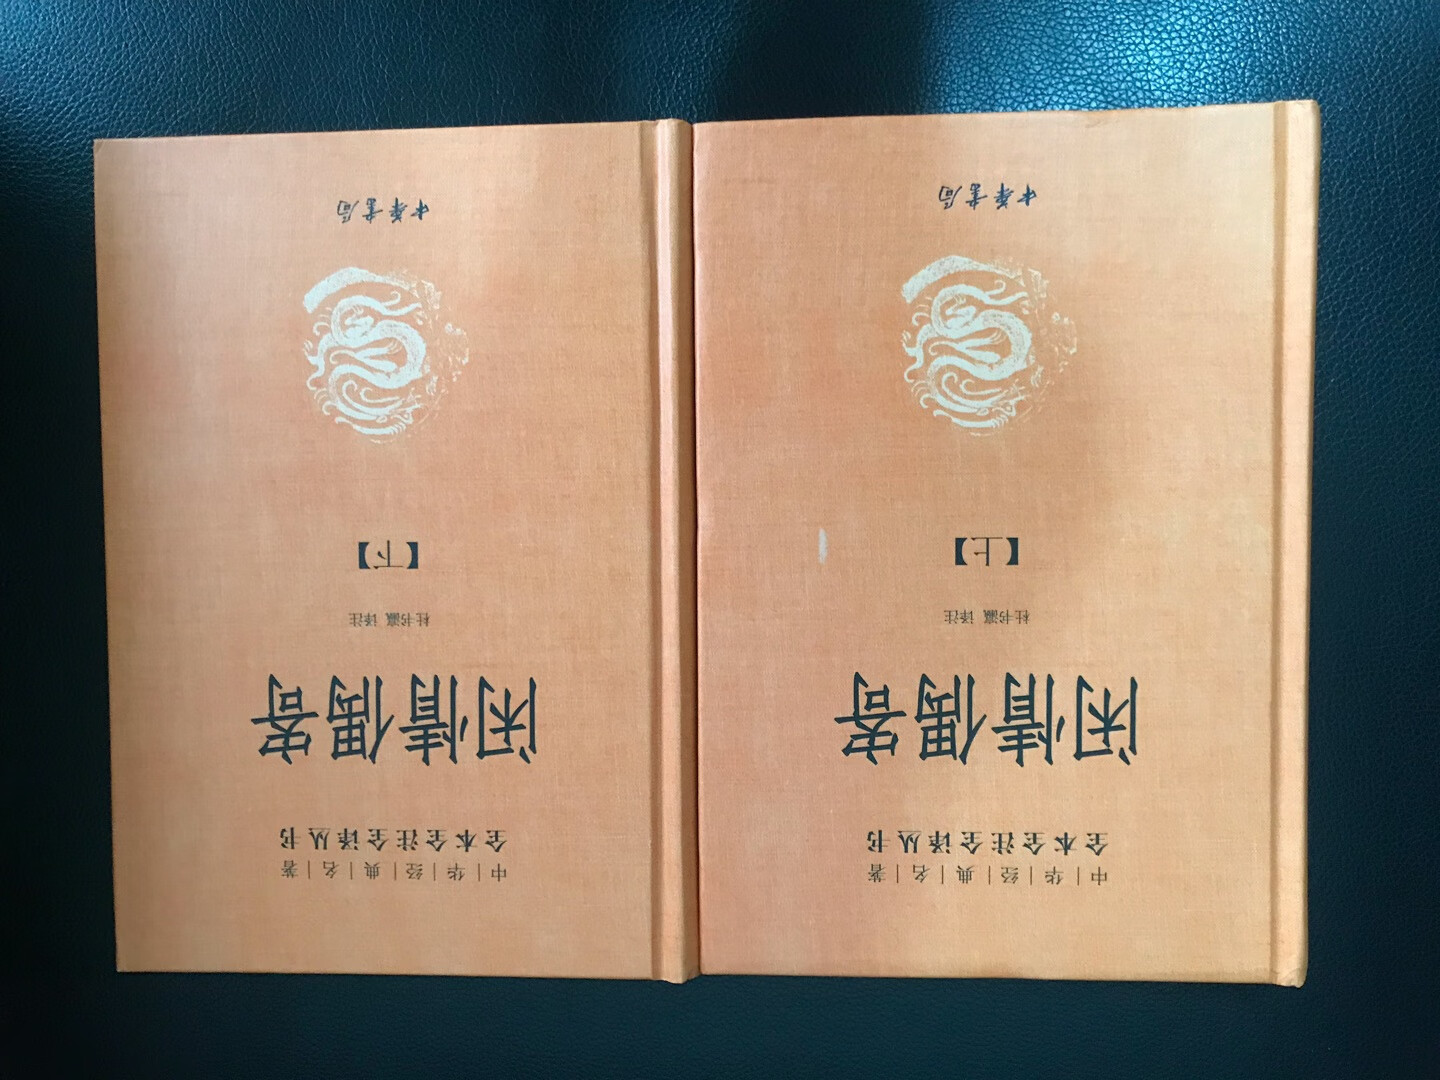 中华书局这套经典名著系列丛书，纸质、排版、装帧精美，各个方面都很不错，注释也是相对权威了，个人比较喜欢！